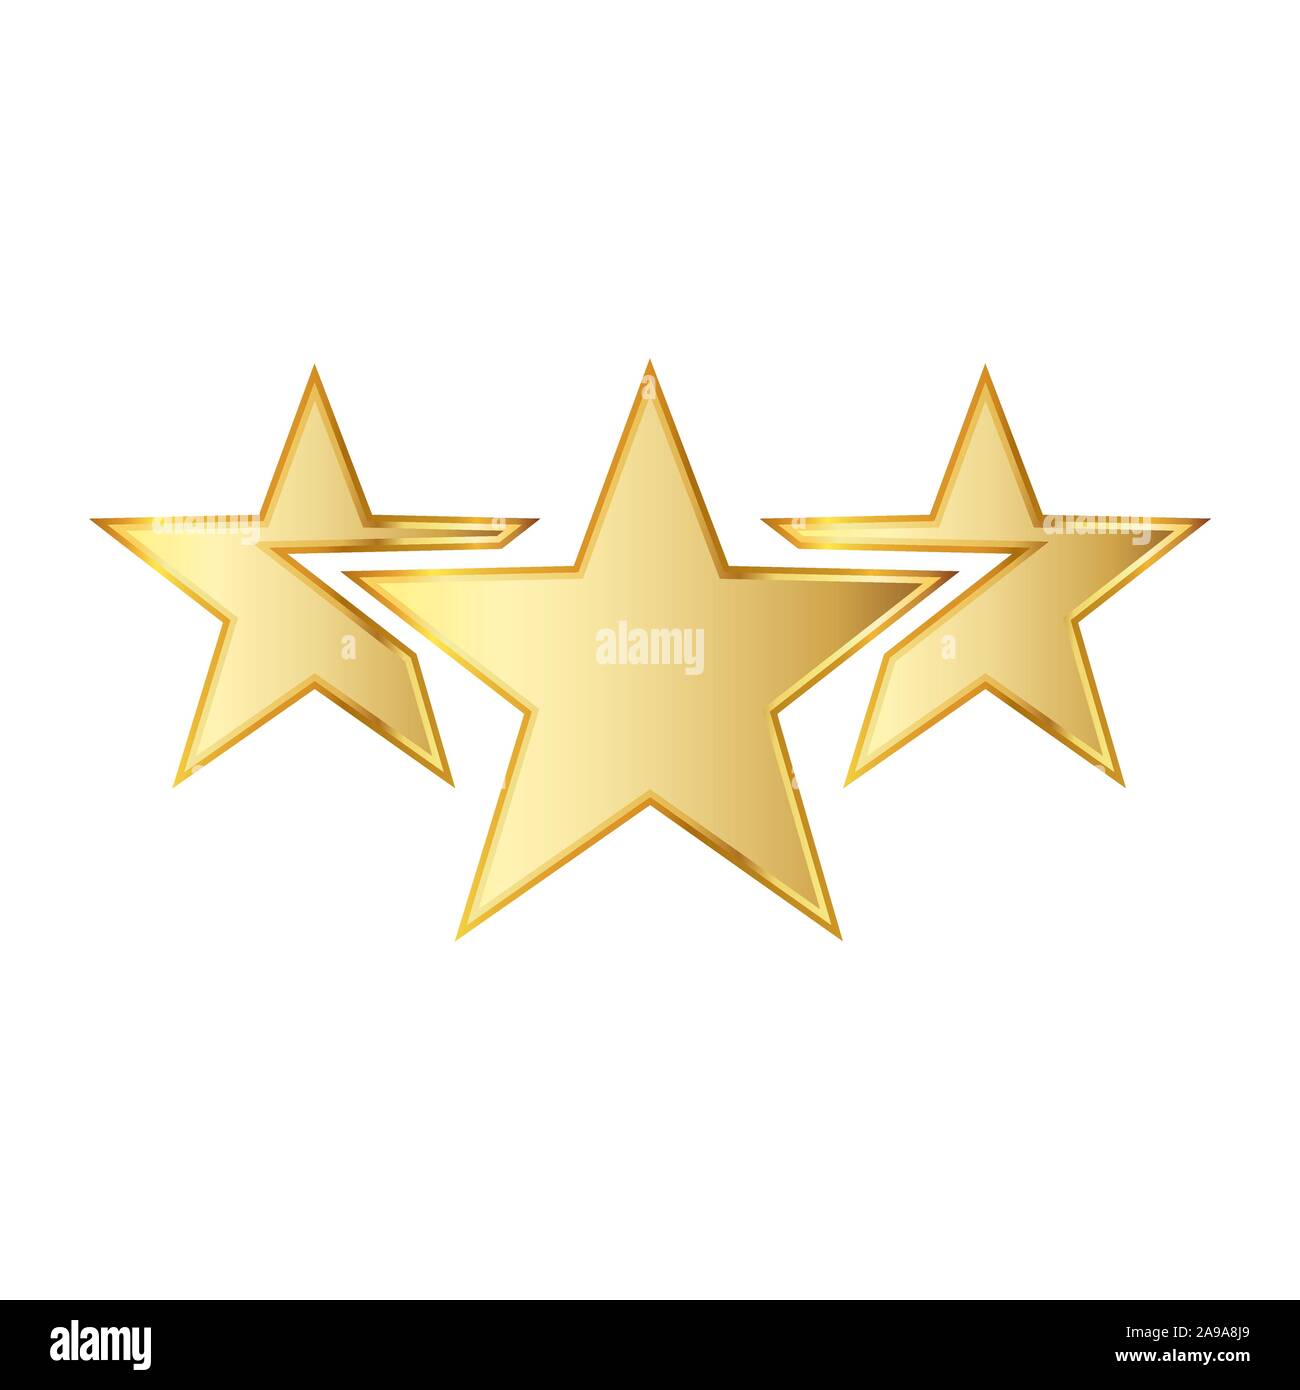 Golden Star des icônes. Vector illustration. Trois étoiles d'or sur fond blanc. Illustration de Vecteur